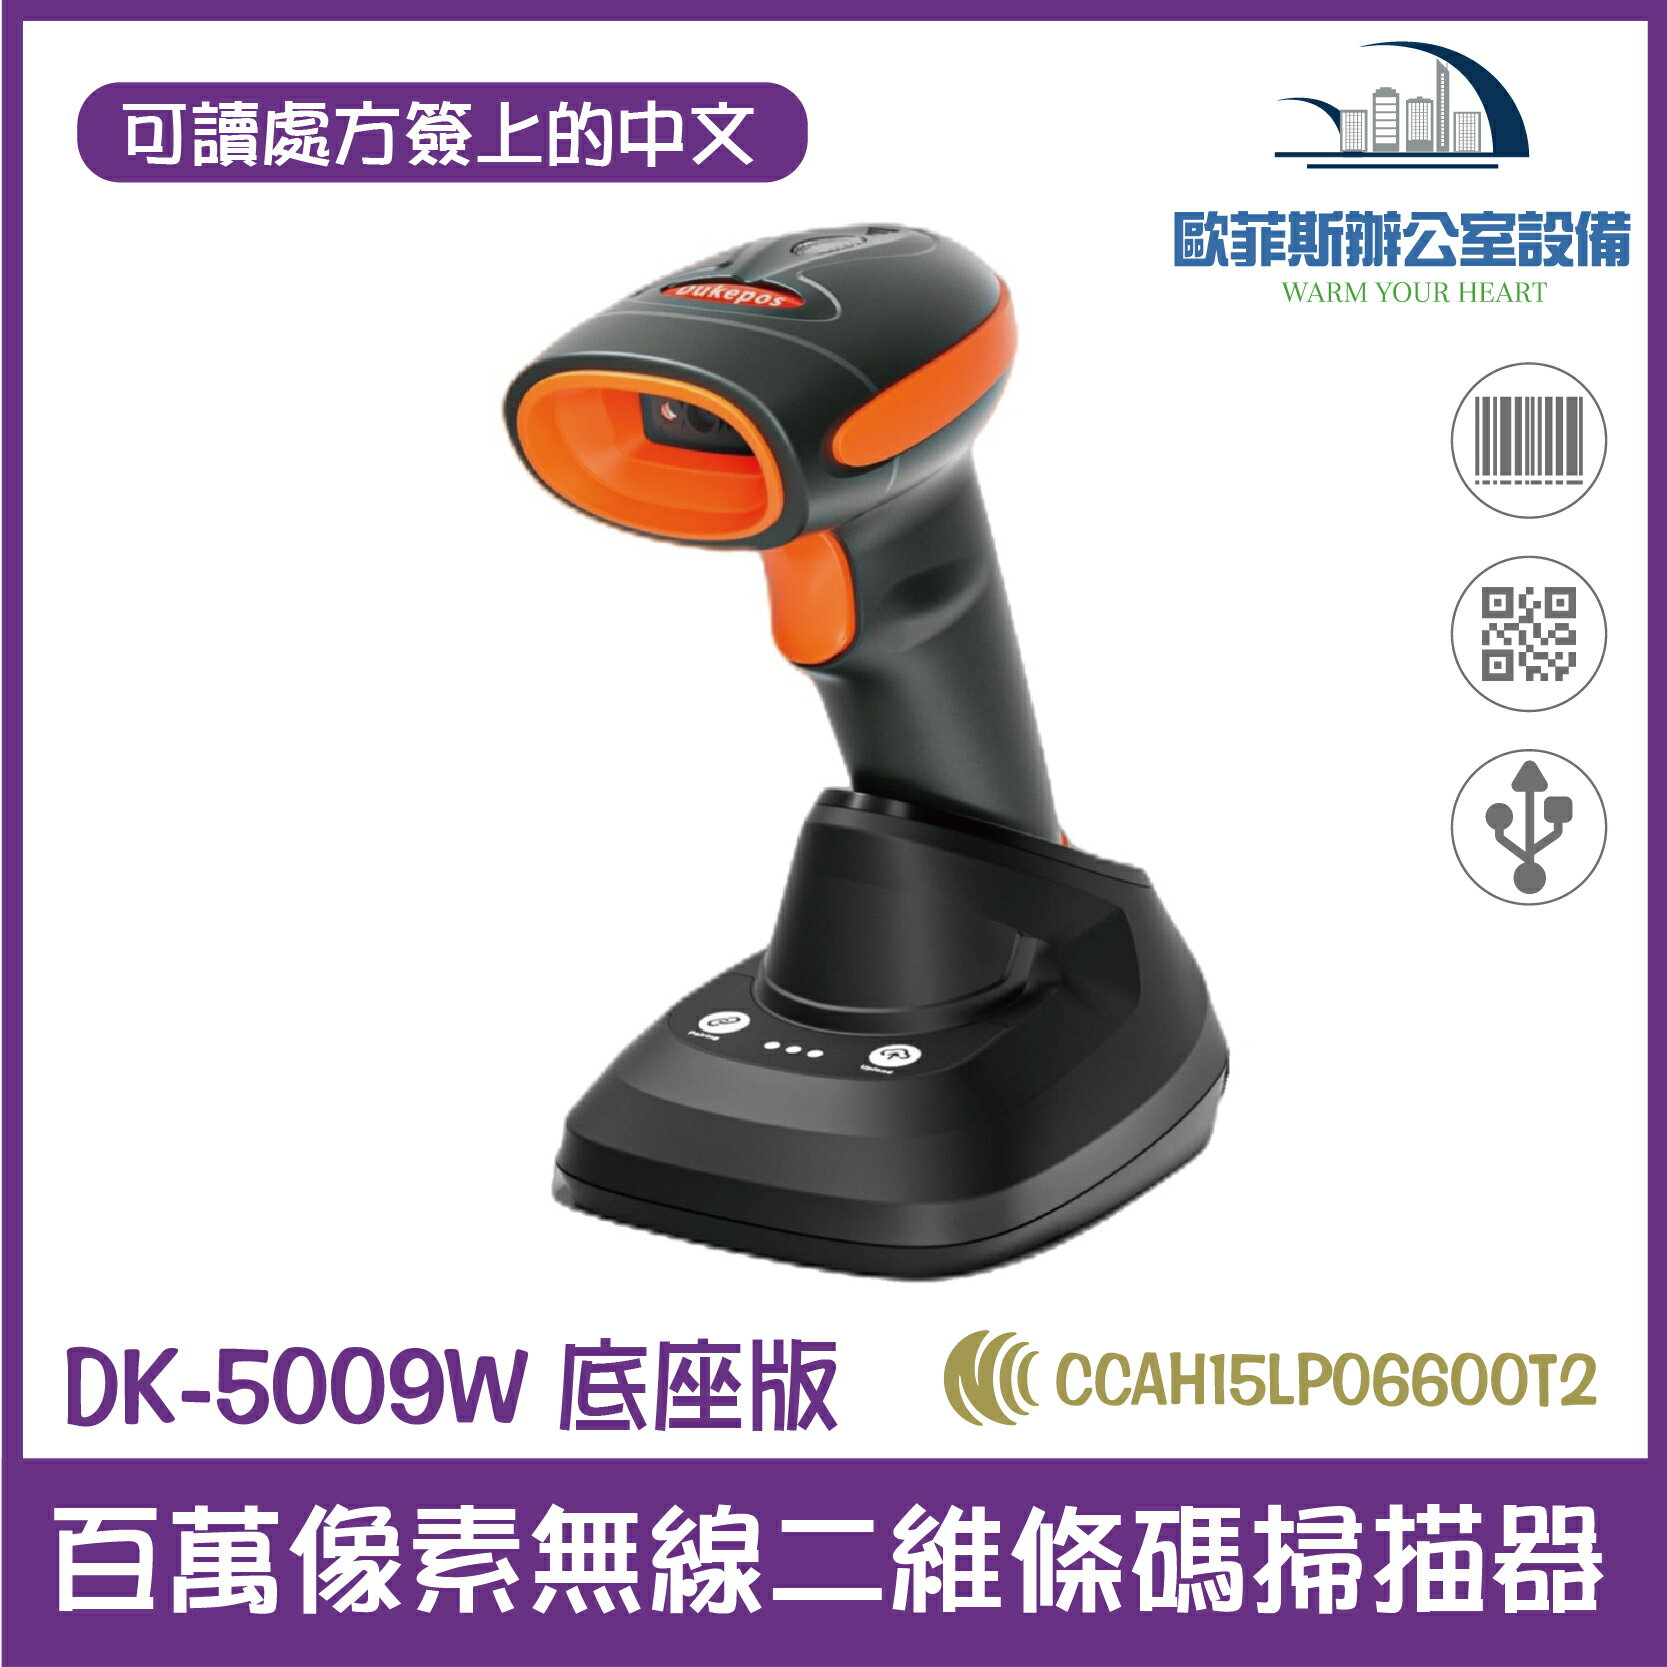 DK-5009W 底座版百萬像素無線二維條碼掃描器 可讀處方簽上的中文